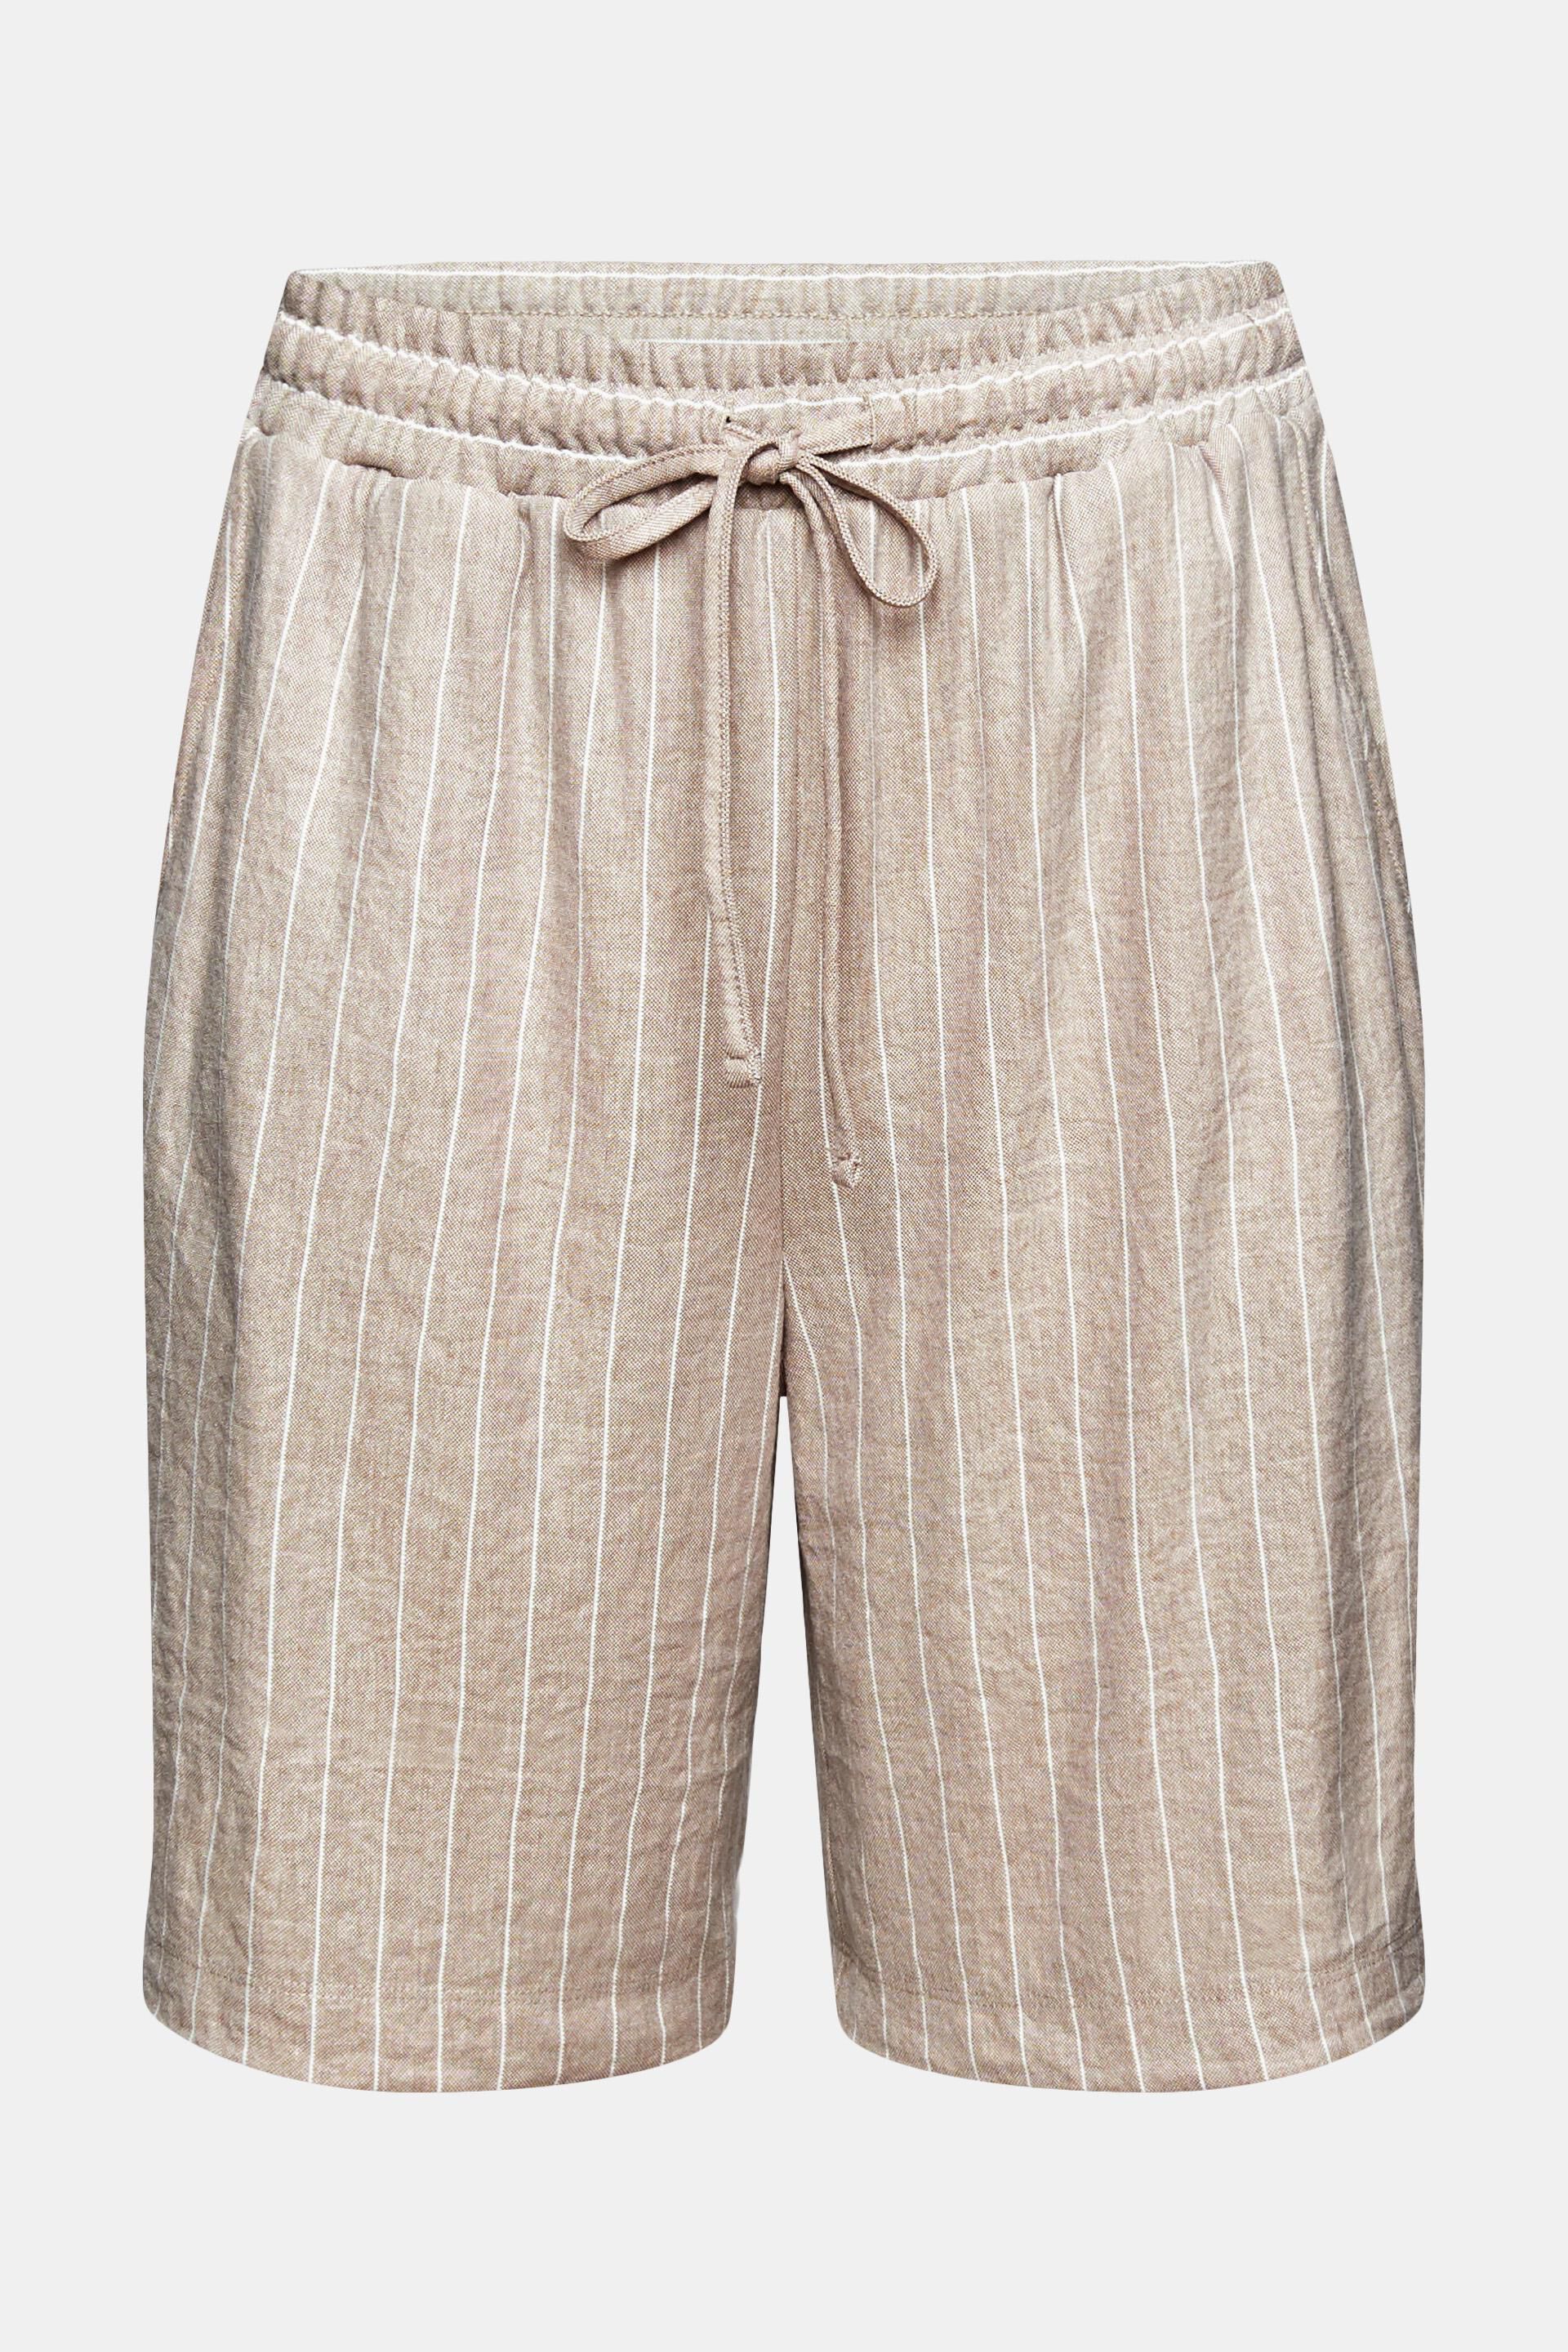 Esprit Knit Shorts Pantalones Cortos para Niñas 